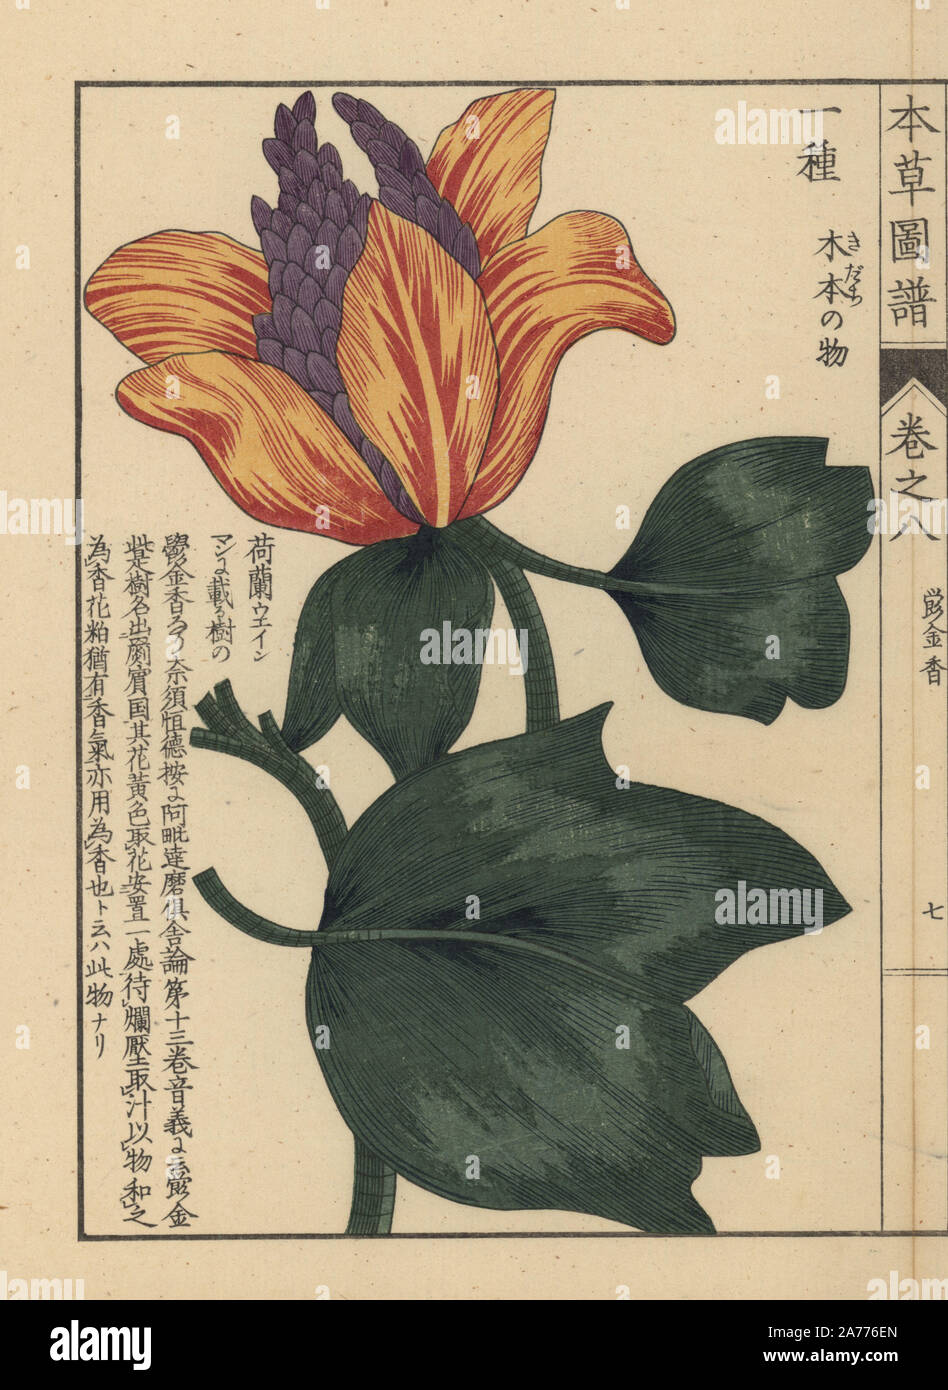 American tulip tree, liriodendron tulipifera L. stampato a colori woodblock incisione di Kan'en Iwasaki da 'Honzo Zufu", una guida illustrata per piante medicinali, Giappone, 1884. La Iwasaki (1786-1842) era un giapponese botanico, entomologo e zoologo. Egli è stato uno dei primi botanici giapponesi per incorporare la conoscenza occidentale nei suoi studi. Foto Stock